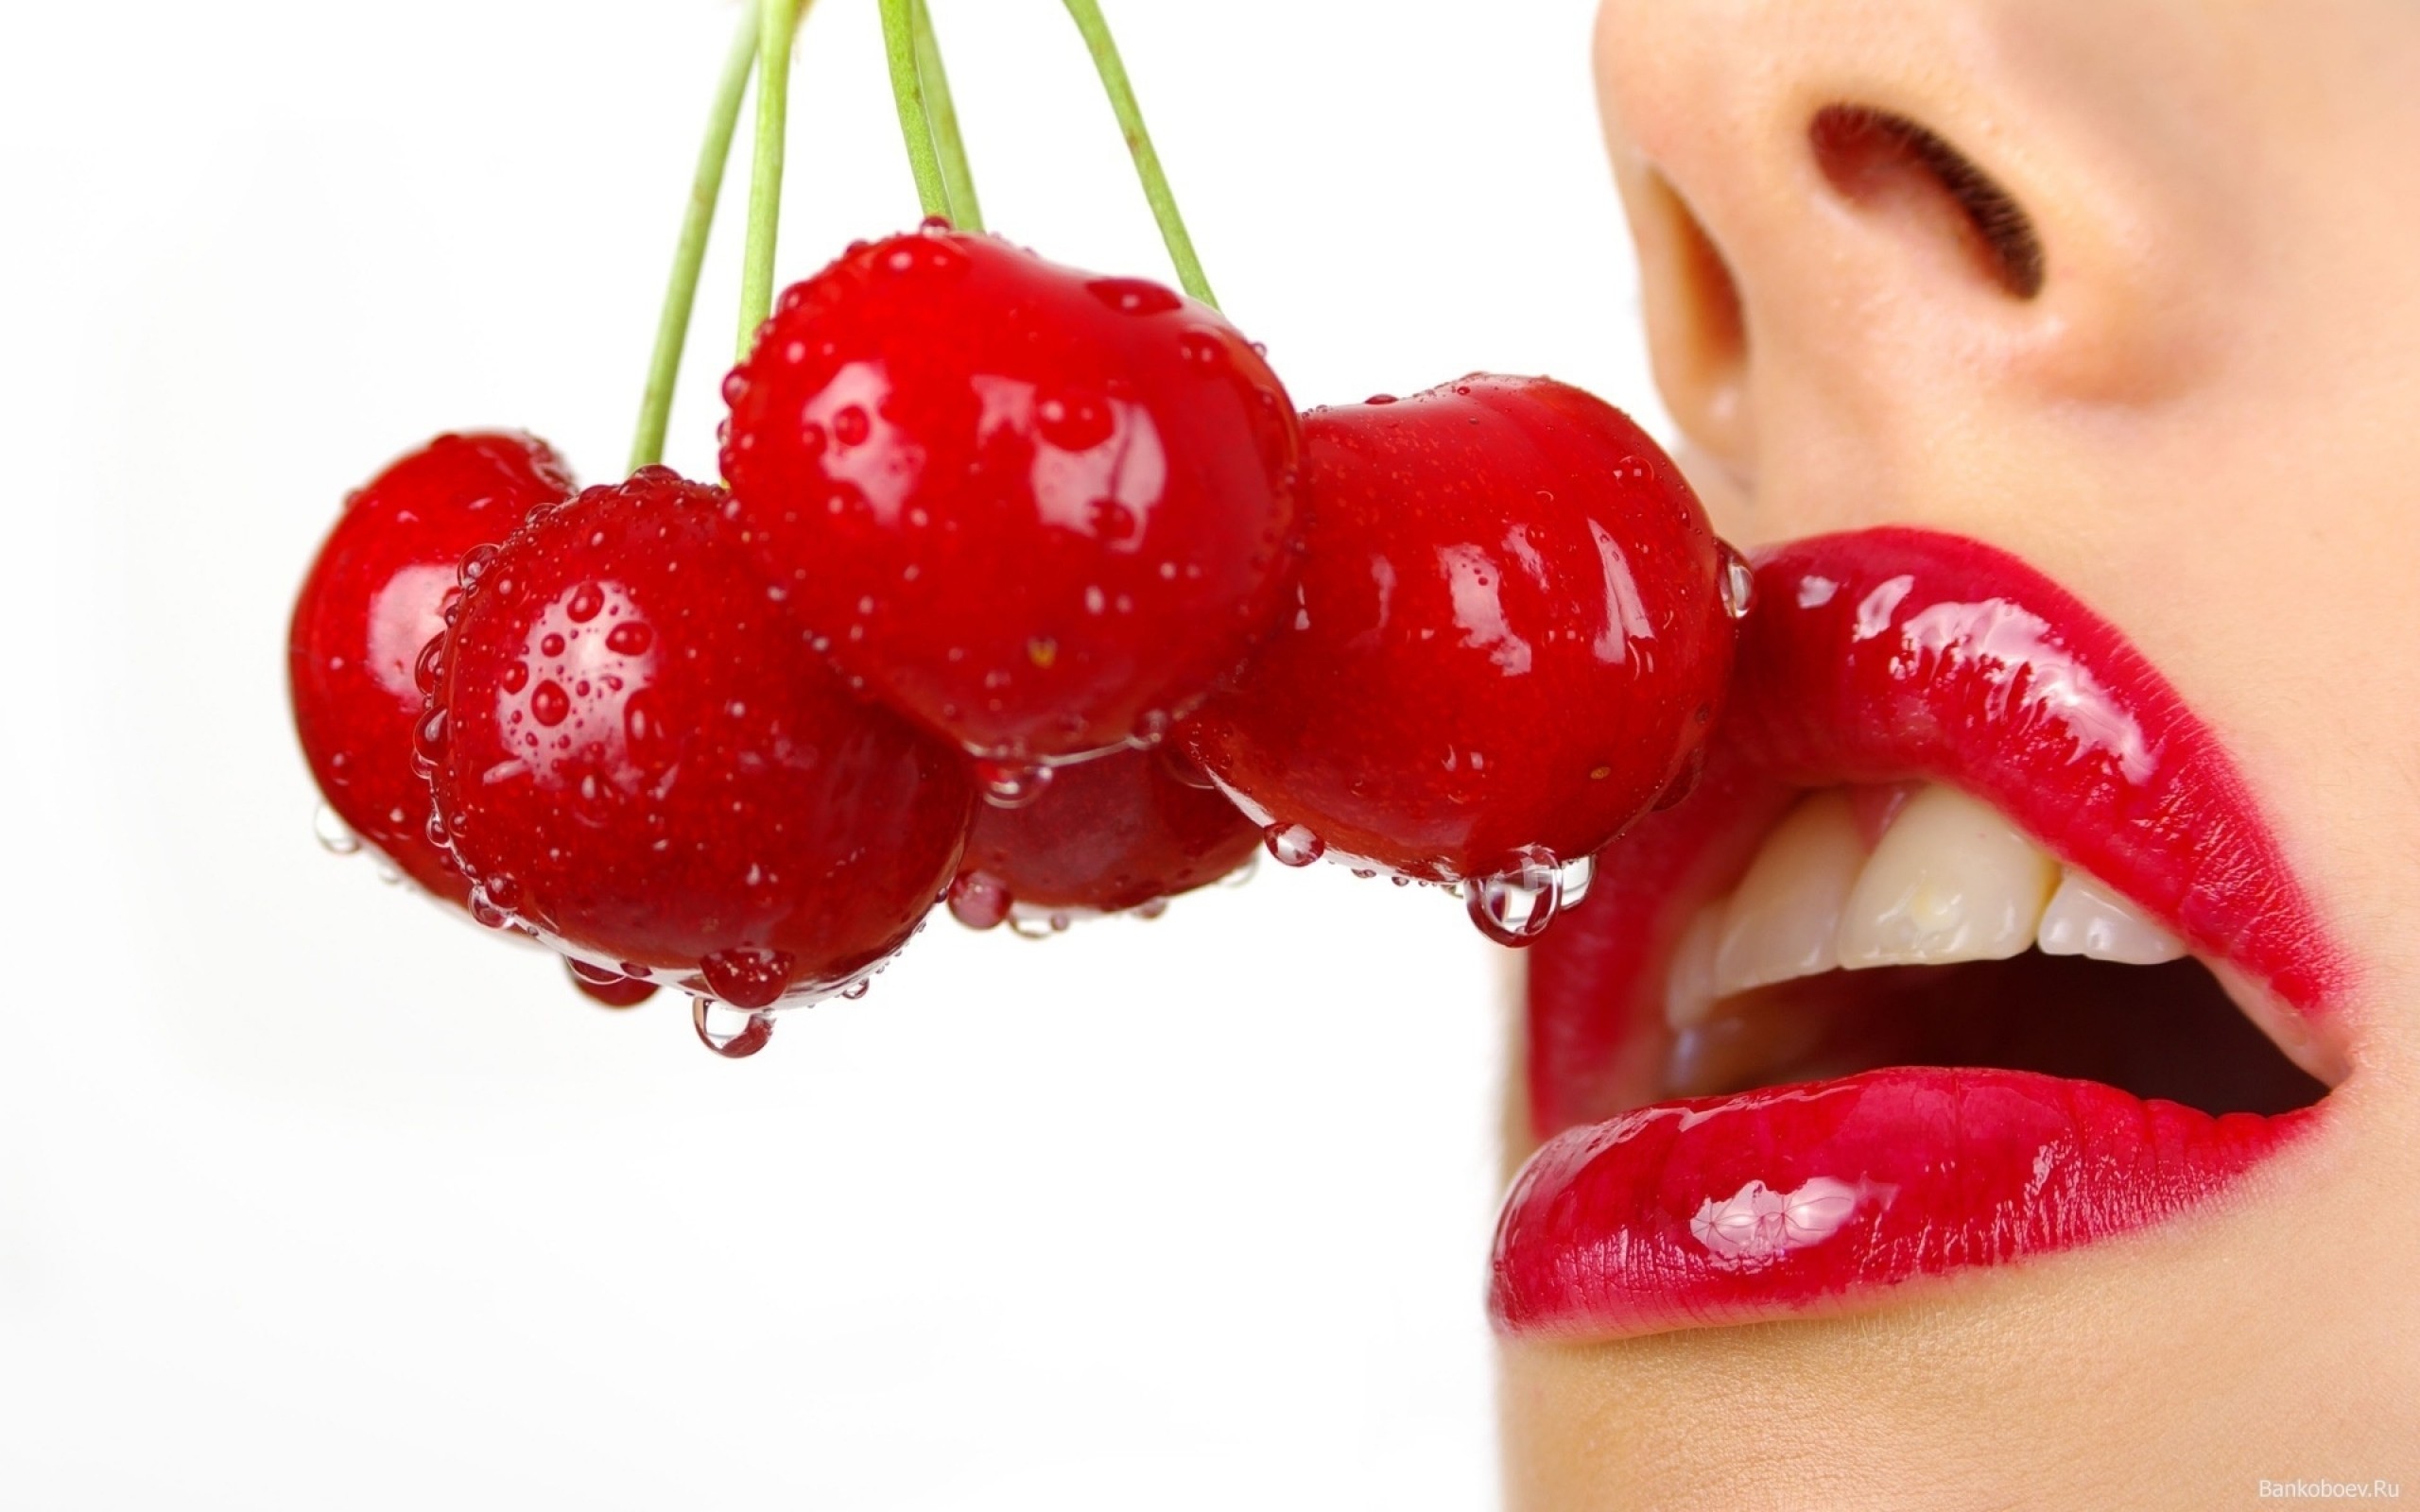 Labios rojos, cerezas tocando boca, mujer comiendo cerezas